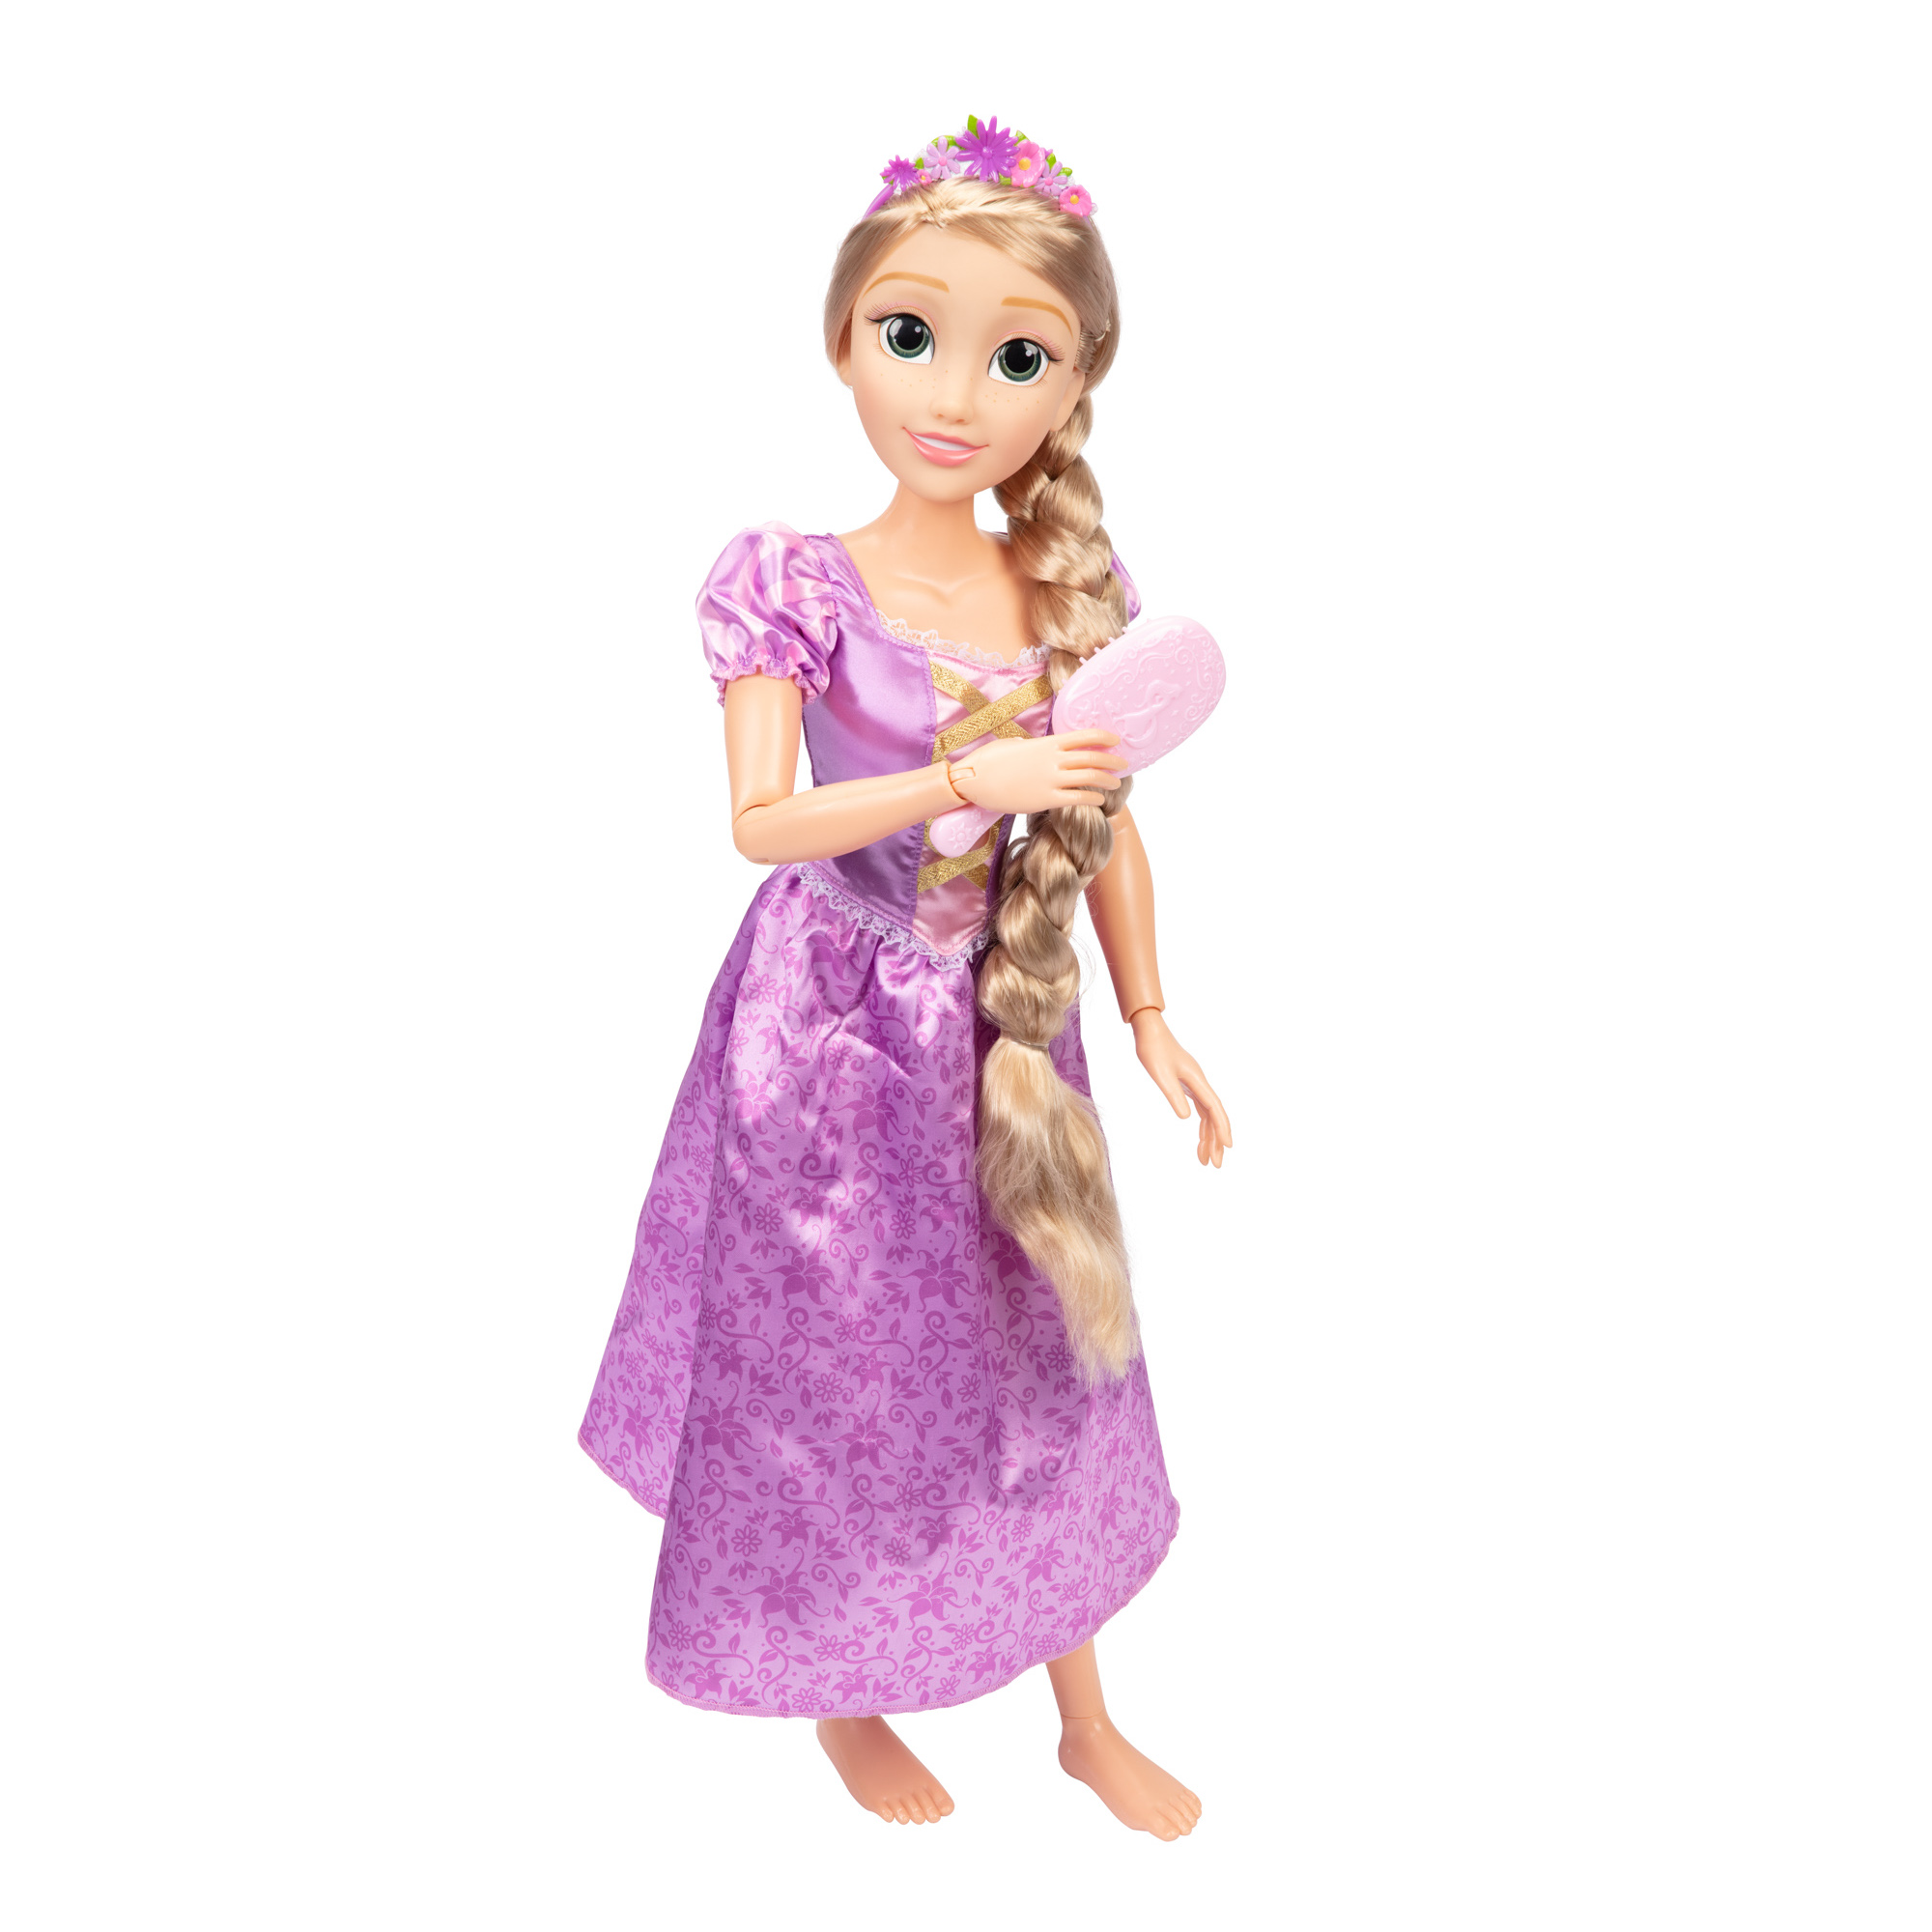 Preços baixos em Jogos Eletrônicos JAKKS Pacific Disney Princess